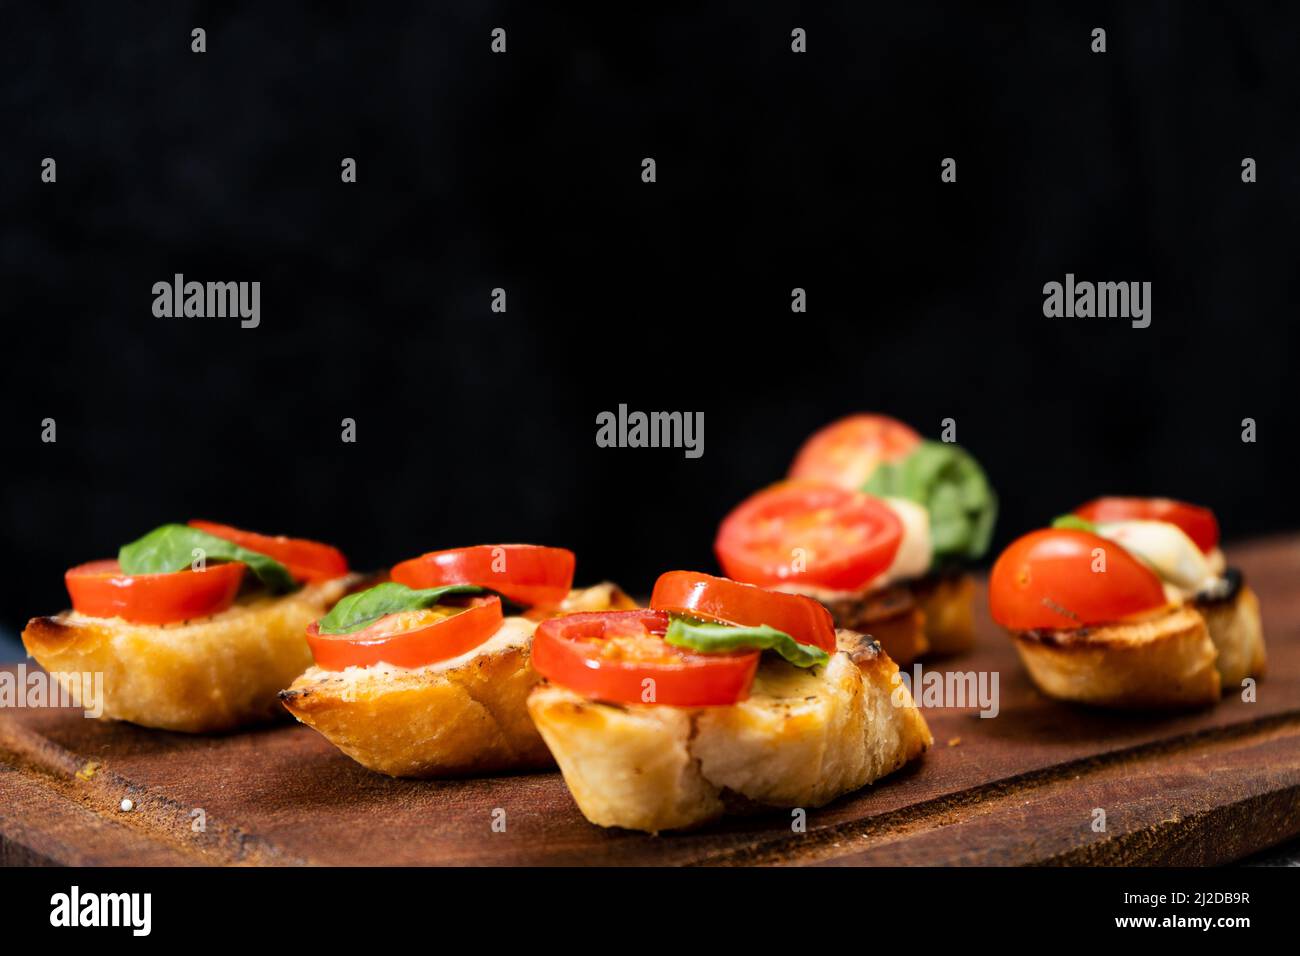 Bruschetta typiquement italienne ou tapa espagnol avec tomates cerises, basilic et fromage à tartiner de type Philadelphie. Concept alimentaire méditerranéen. Copier l'espace. Banque D'Images